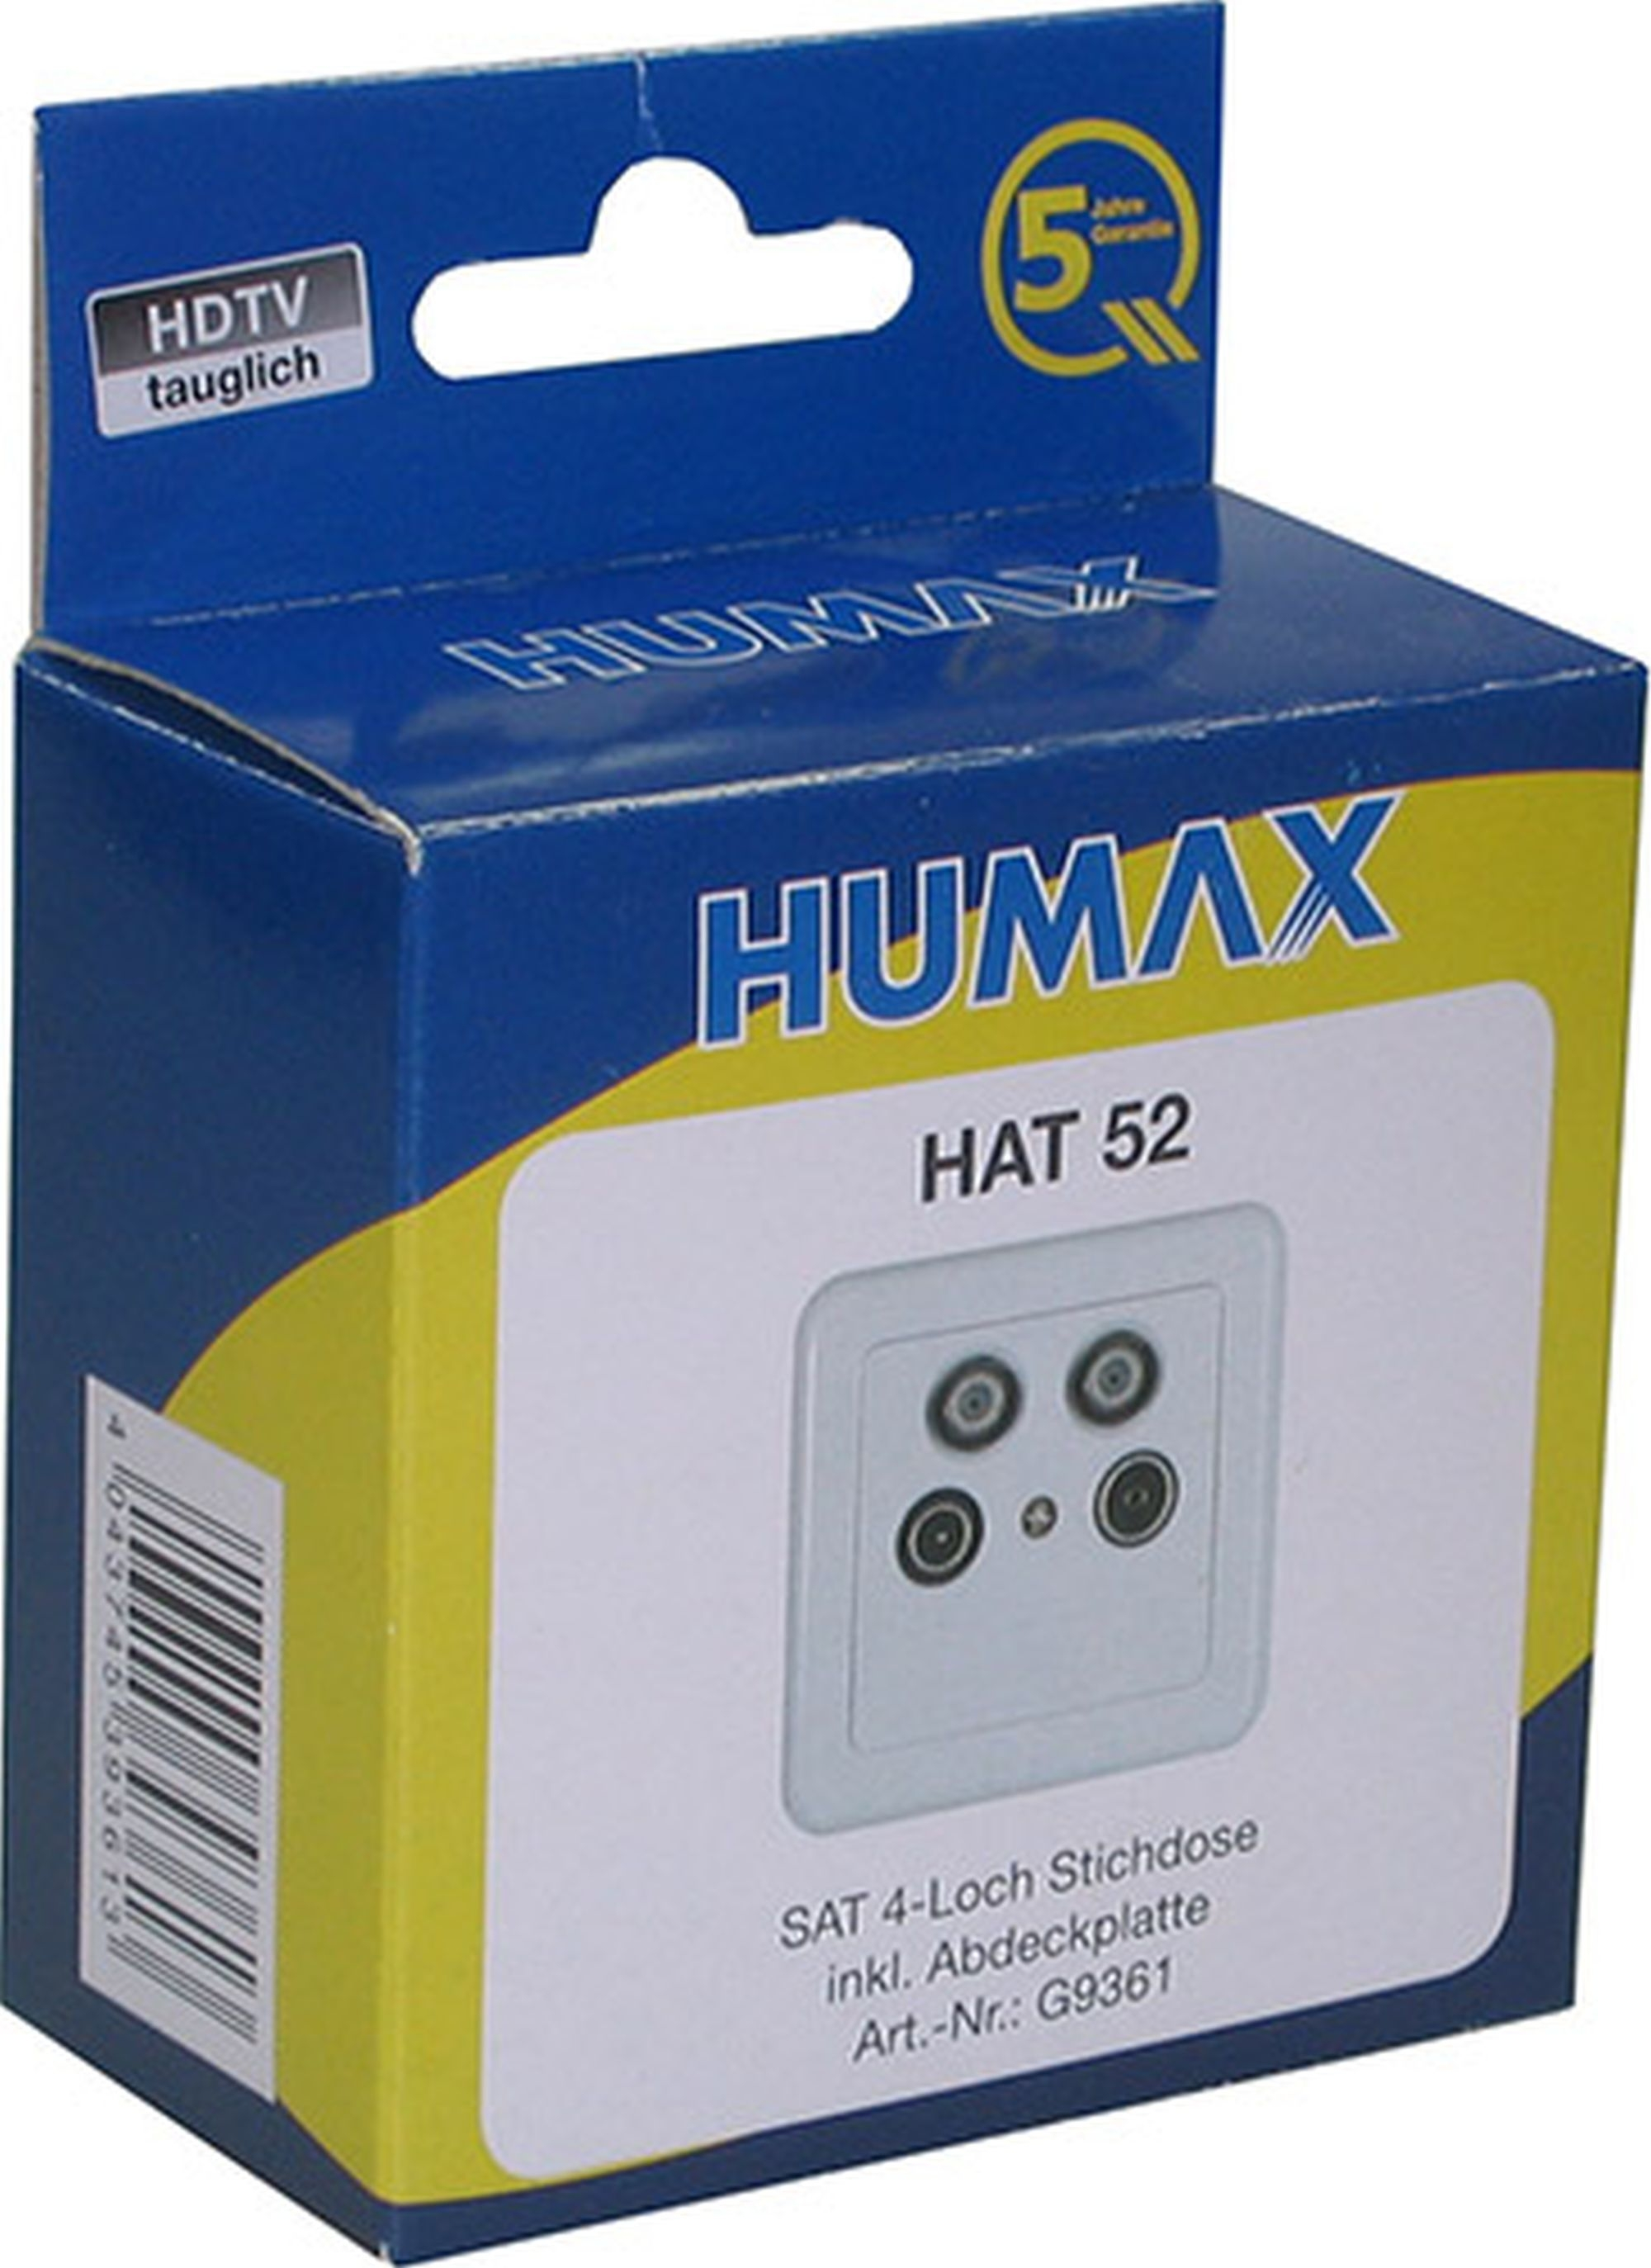 HUMAX HAT 52 Abdeckung 4-Loch Antennenenddose mit